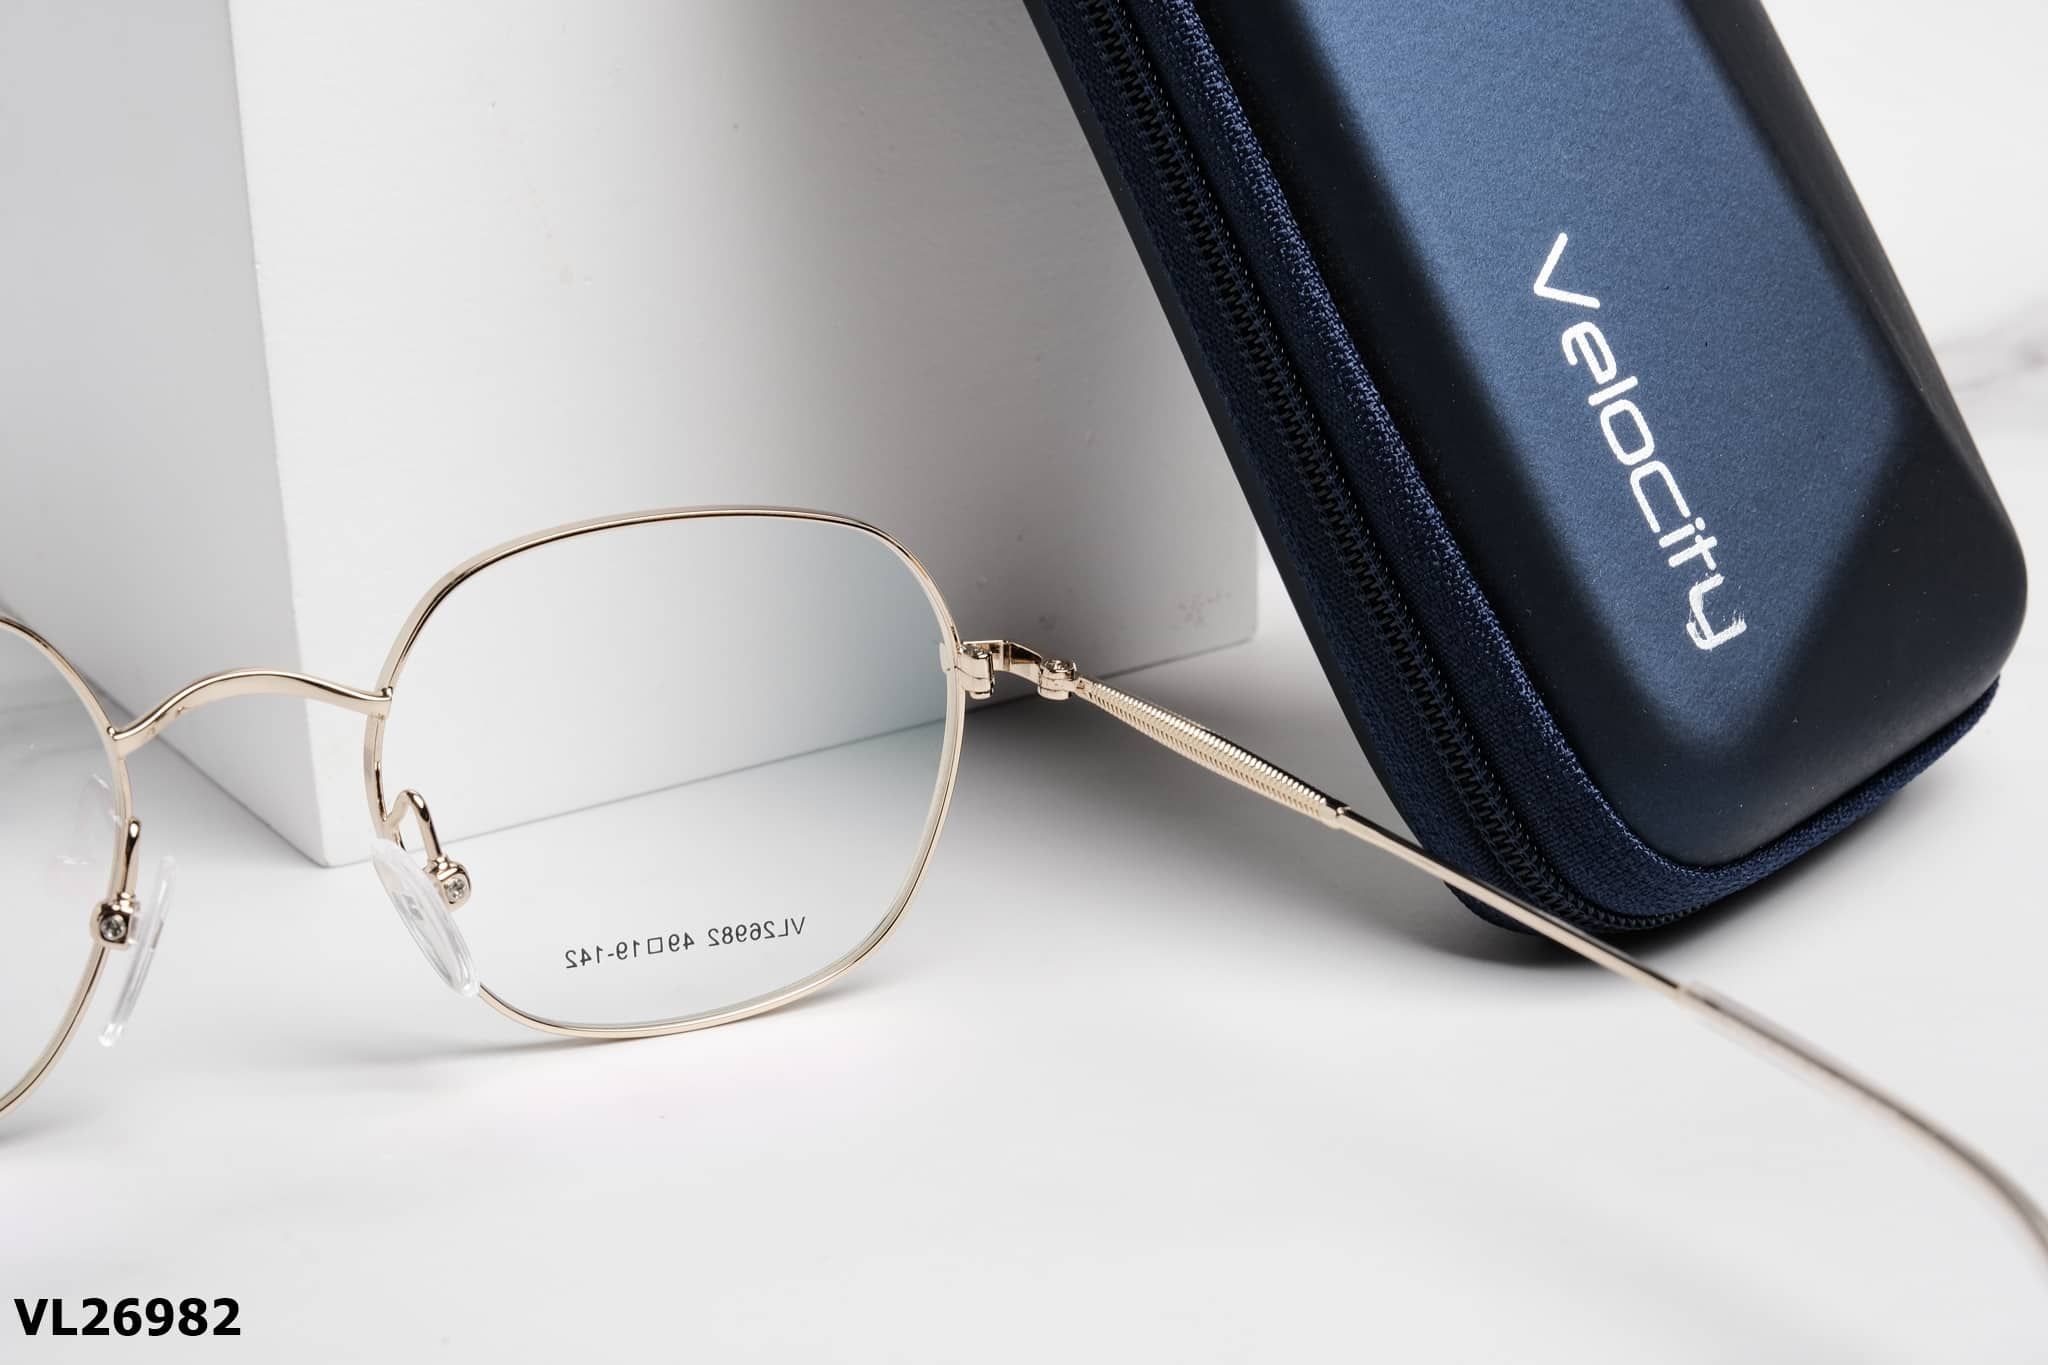  Velocity Eyewear - Glasses - VL26982 